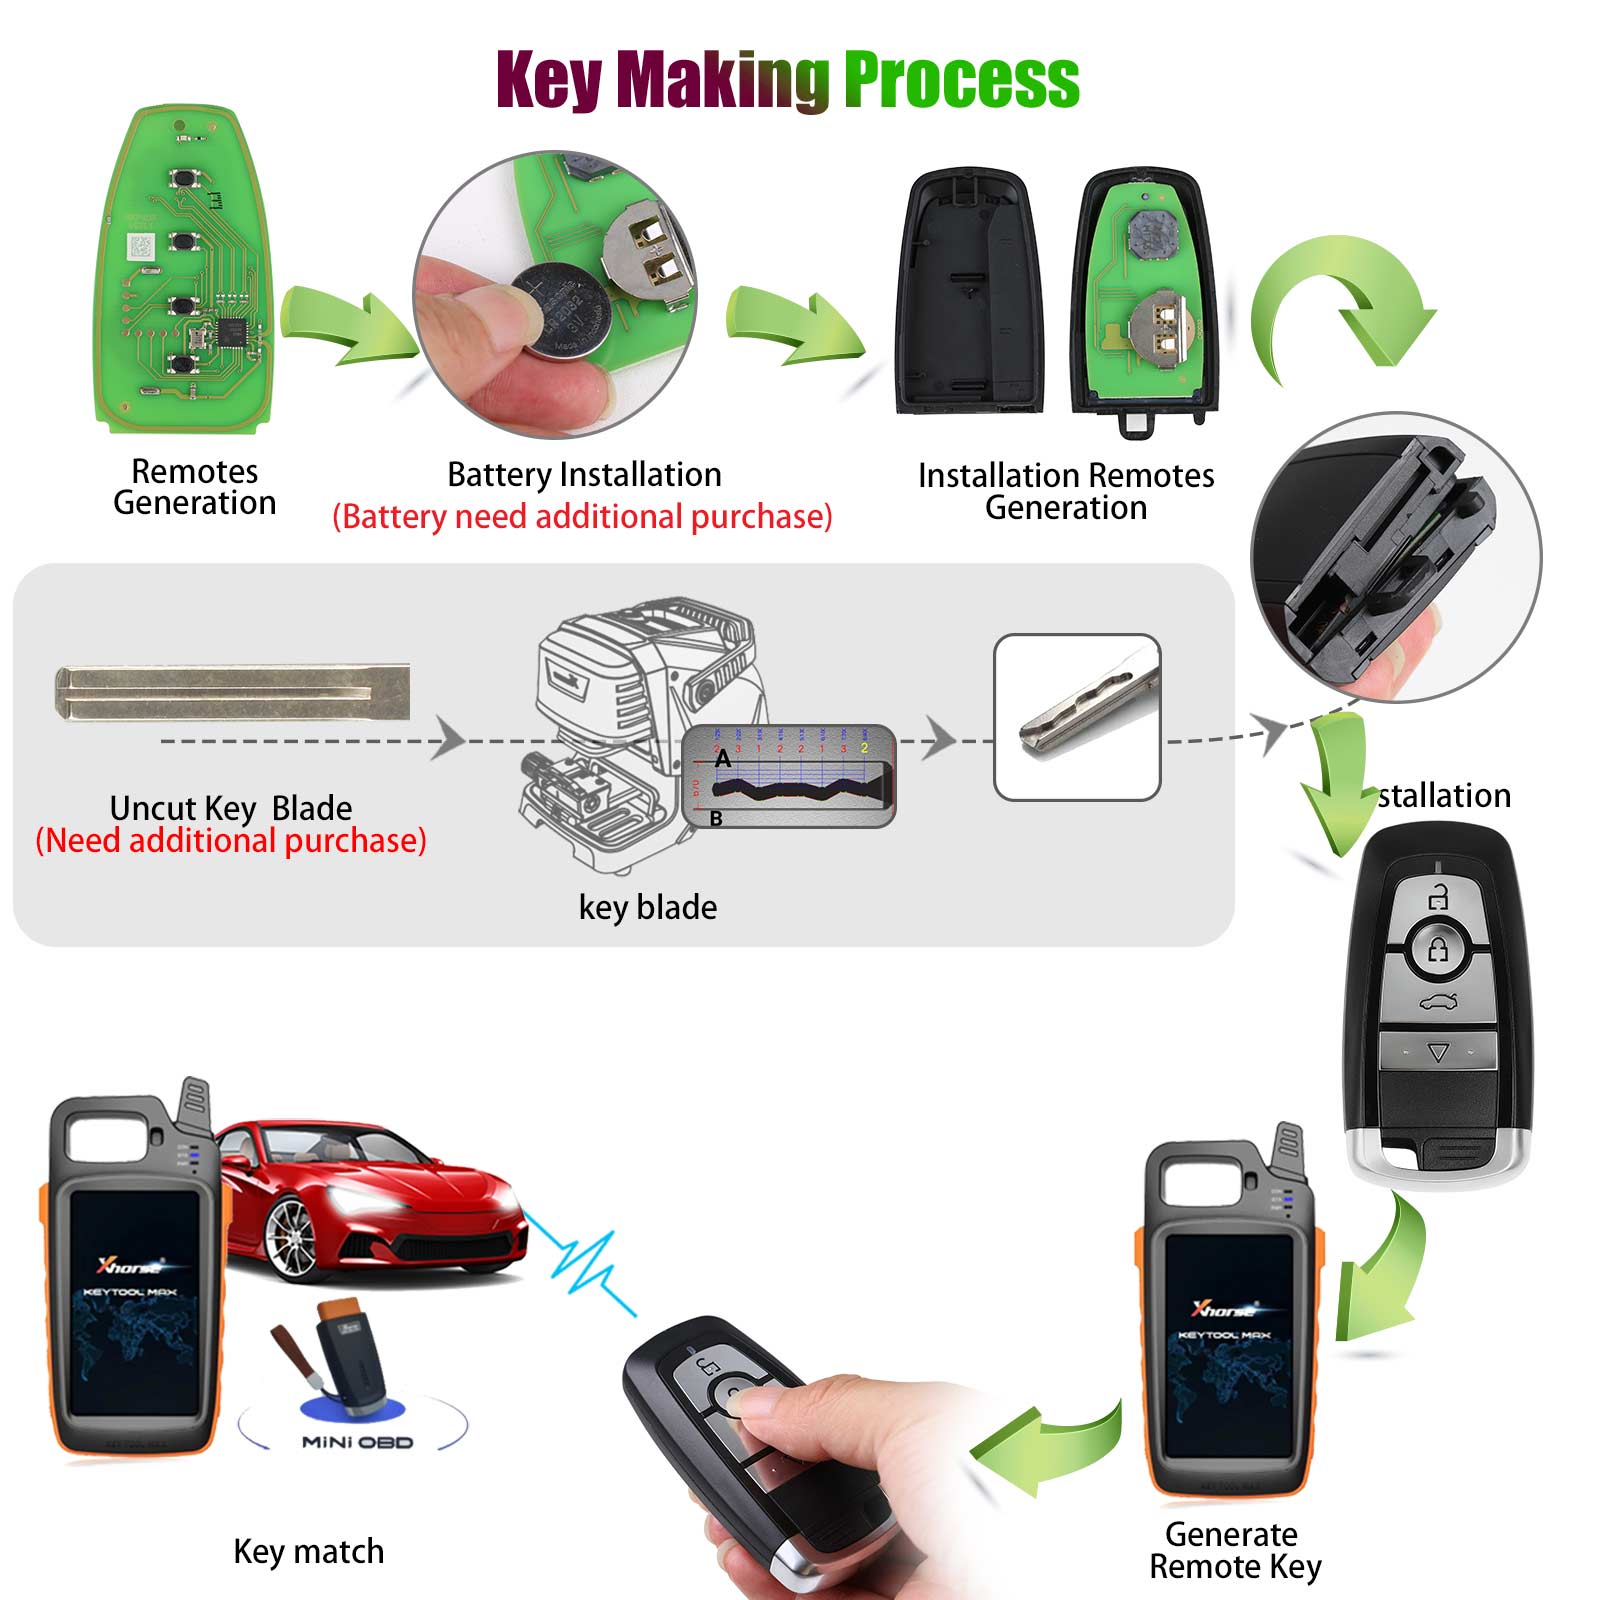 Xhorse XSFO02EN XM38 Series Universal Smart Key 4 Buttons